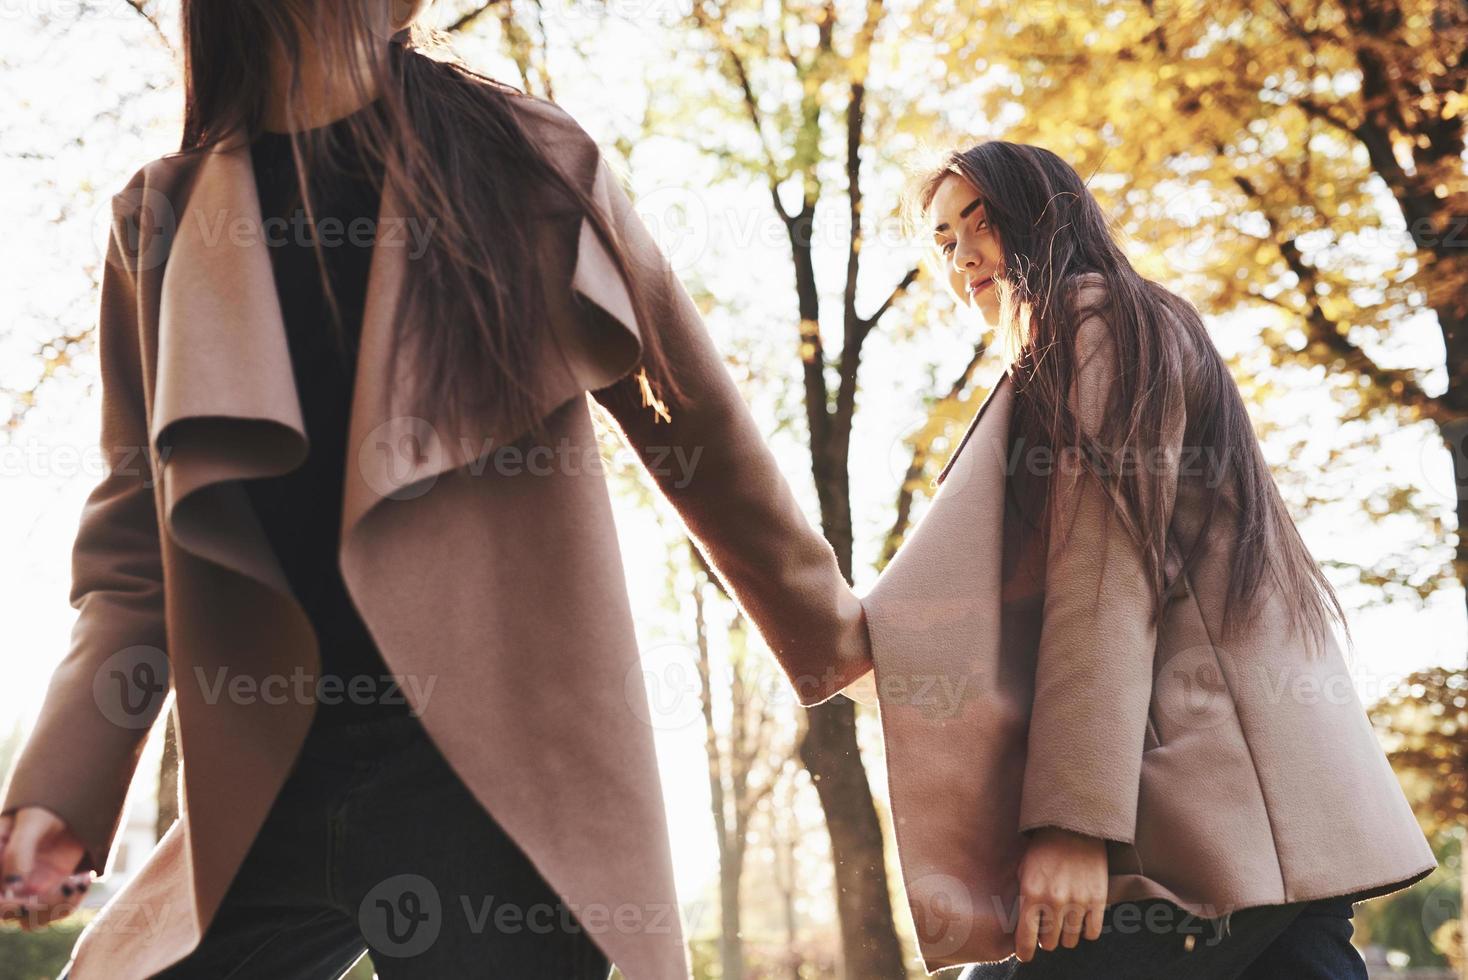 vista da parte inferior de jovens gêmeas morenas de mãos dadas e andando com um casaco casual no parque ensolarado de outono em fundo desfocado foto